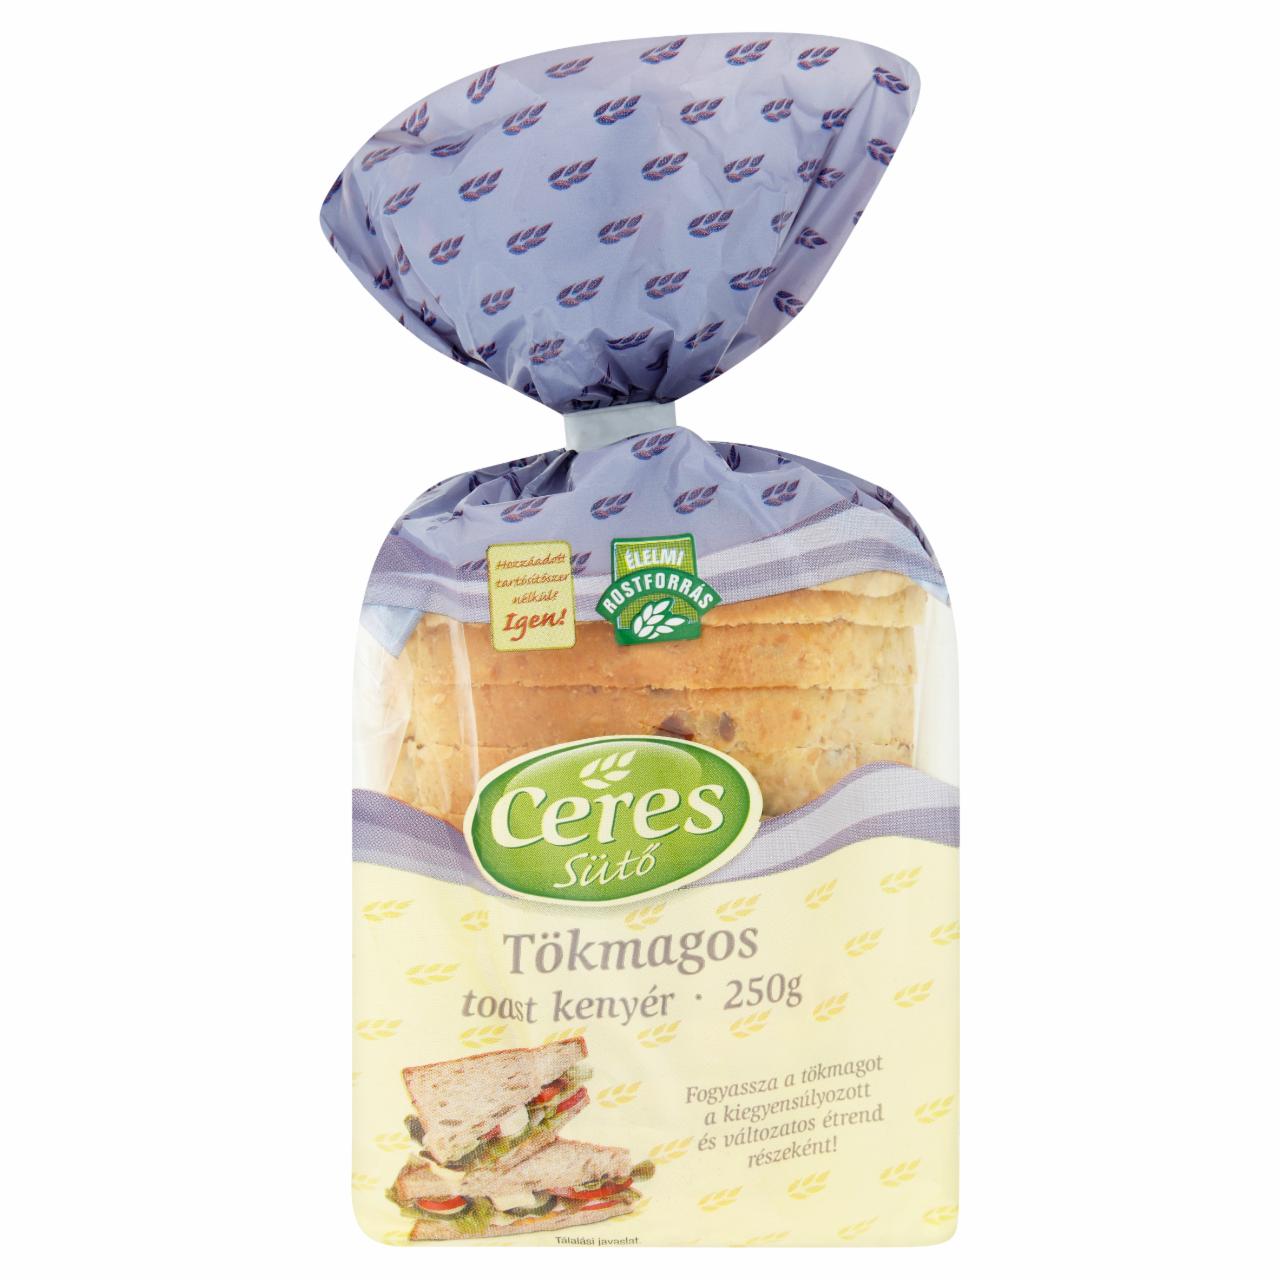 Képek - Ceres Sütő tökmagos toast kenyér 250 g